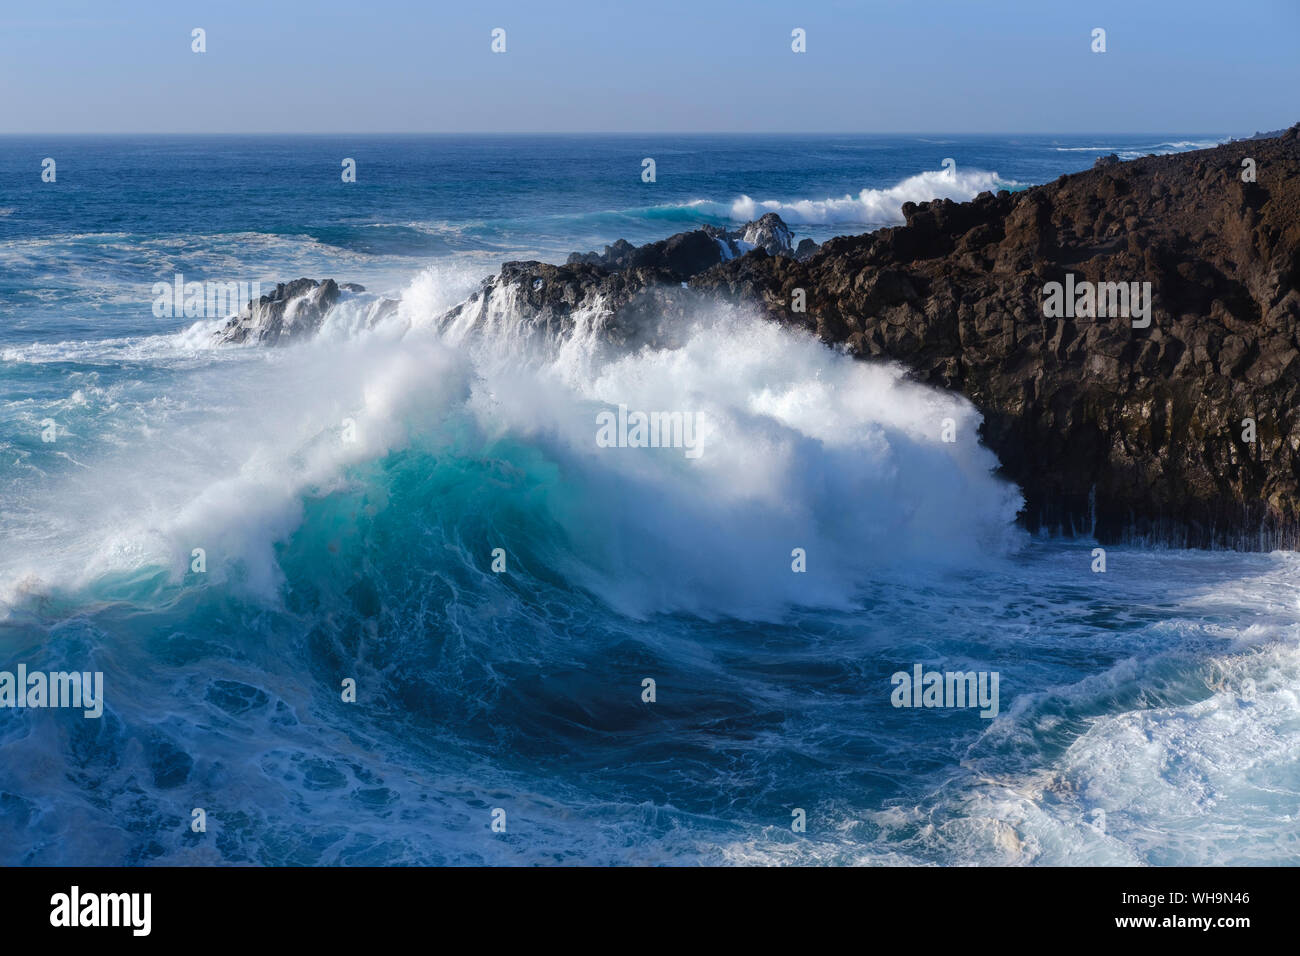 Breaking wave, Los Hervideros, Lanzarote, Spain Stock Photo